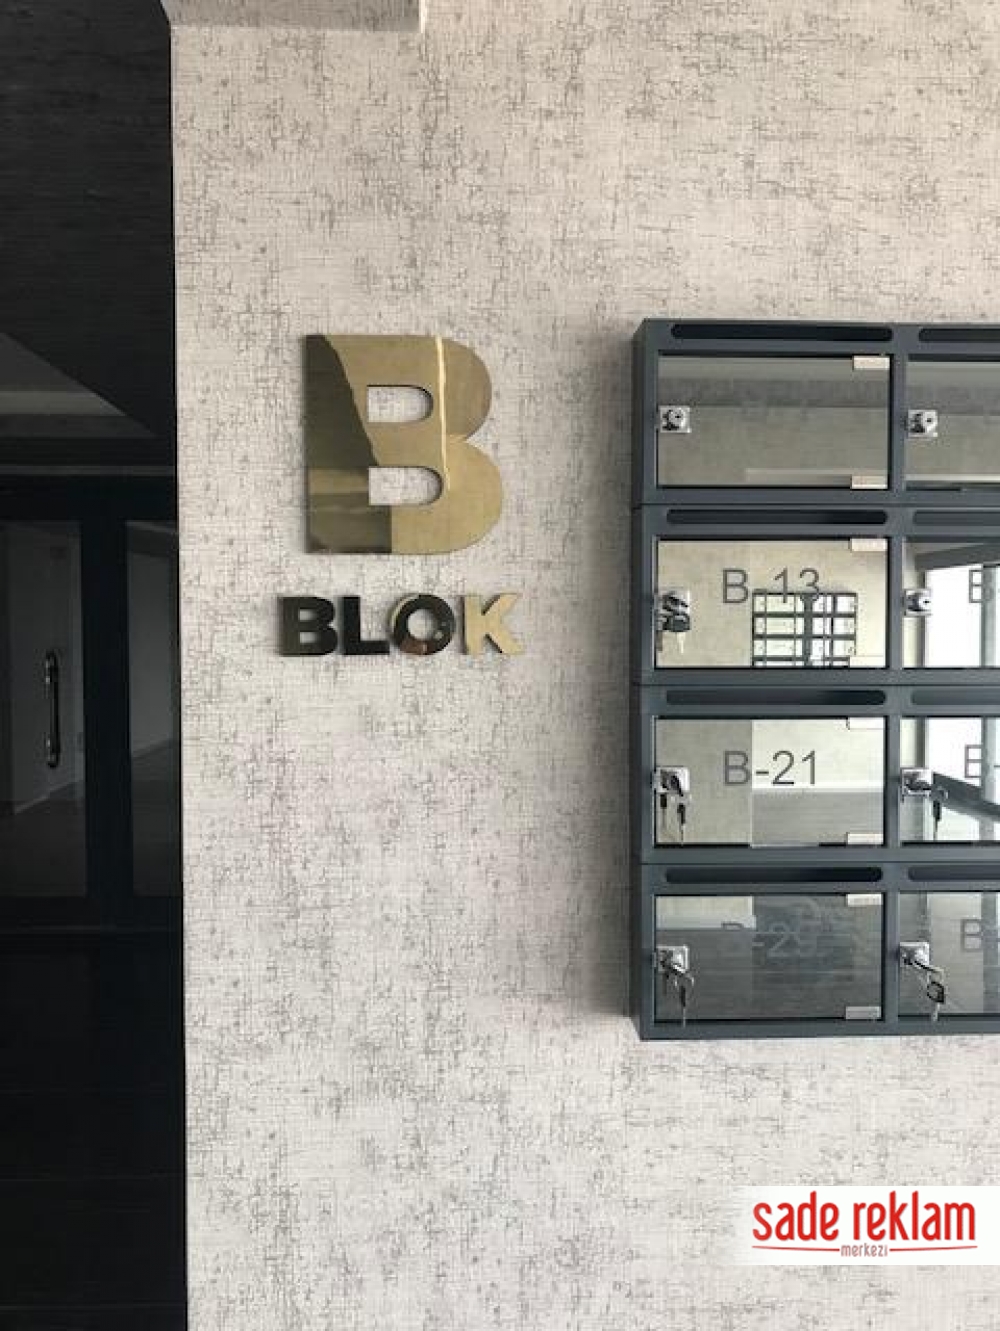 A Blok yazıları-B Blok yazıları-kabartma site ve blok isimleri-blok kabartma yazısı-site blok isimleri-altın rengi blok isimleri